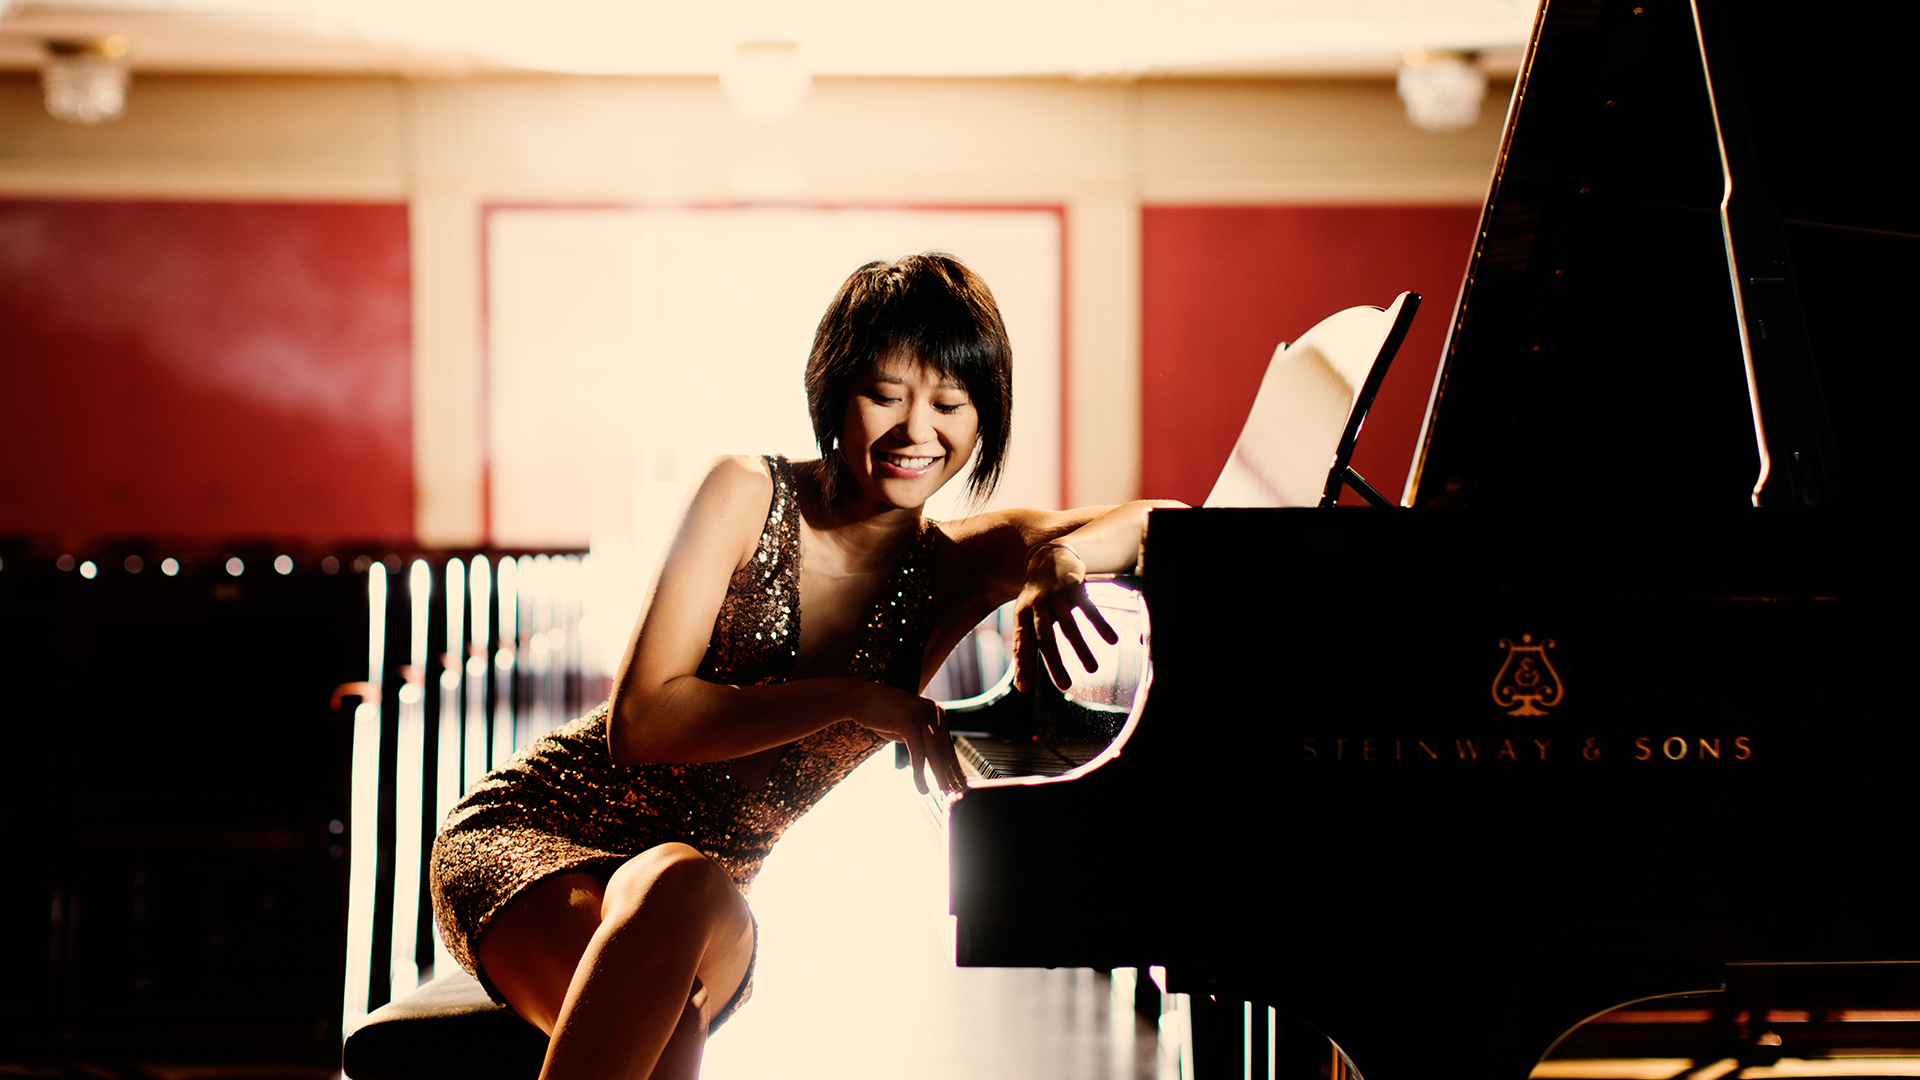 Yuja Wang sitting at a piano dressed elegantly